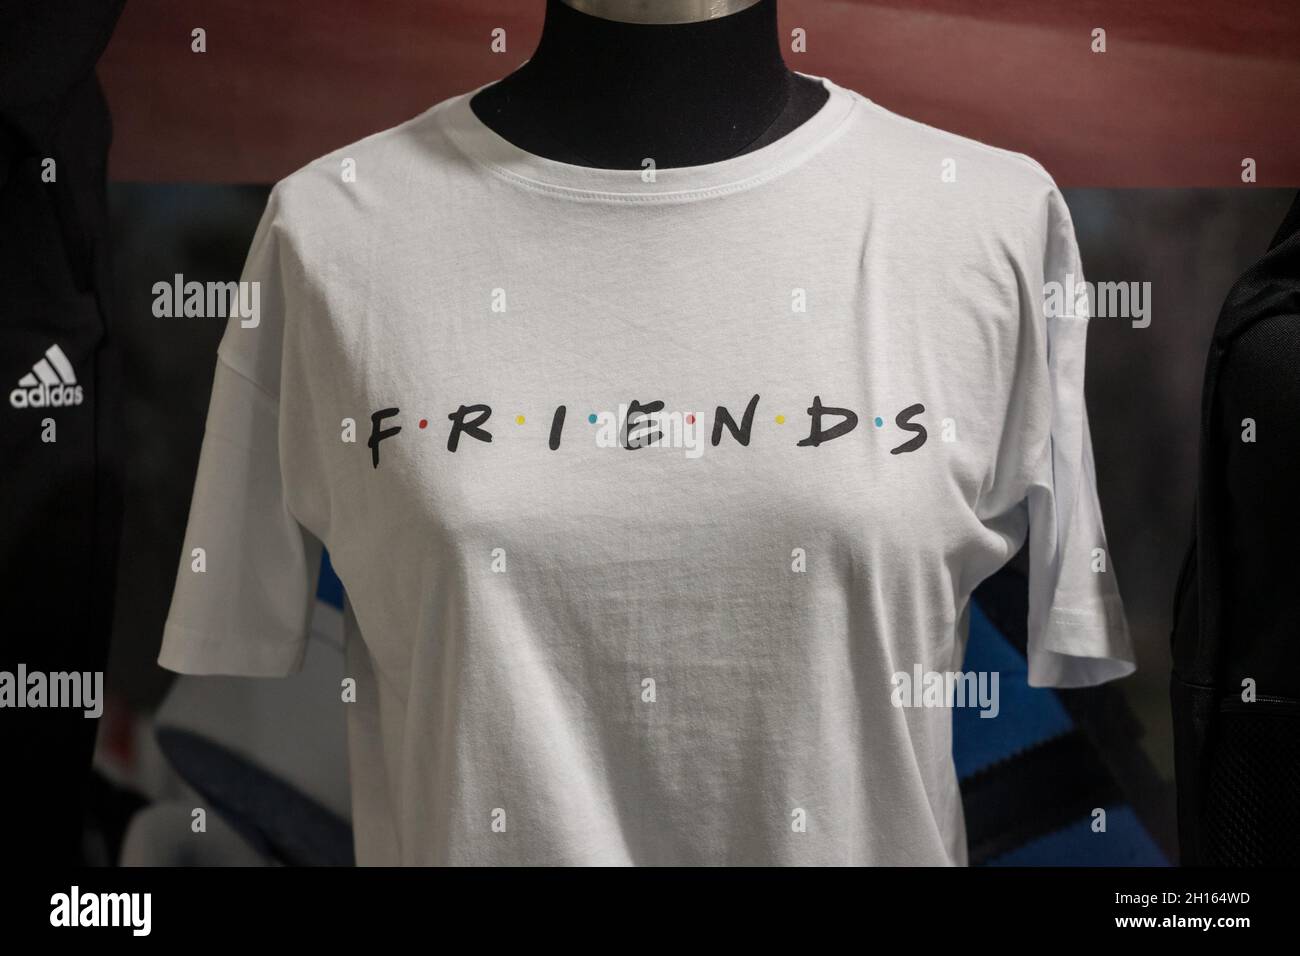 BELGRADO, SERBIA - 1 DE JUNIO de 2021: Blur Selectivo en una camiseta con  el logotipo de Friends serie sitcom a la venta en Belgrado. Friends es un  programa de televisión icónico